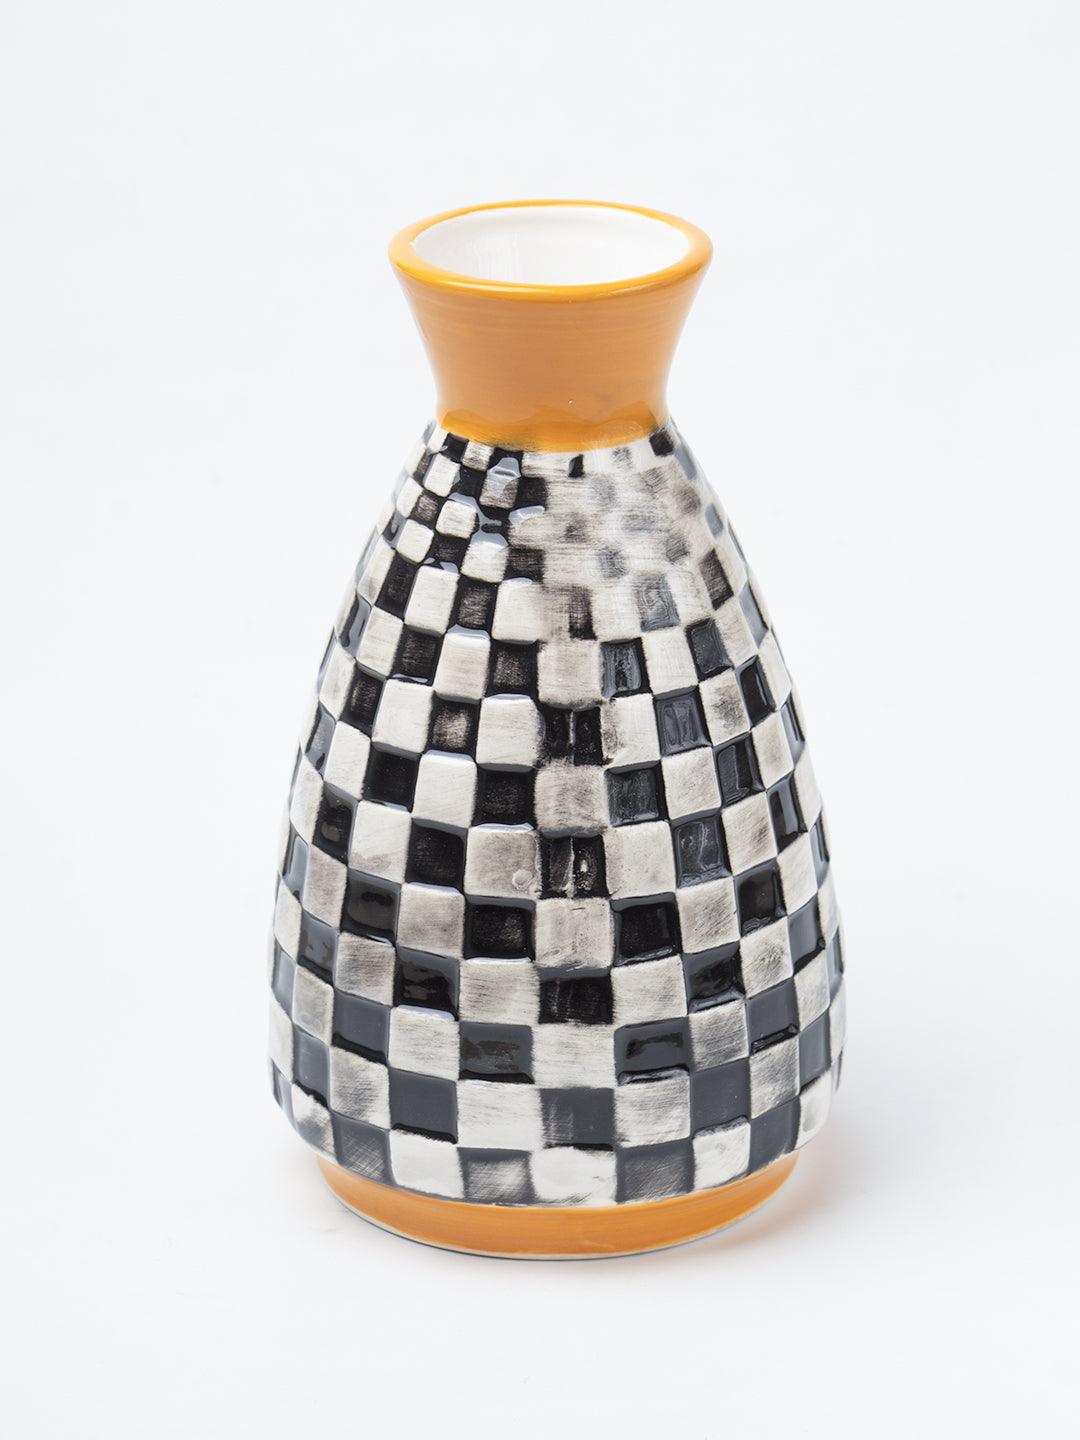 Black & White Ceramic Curvy Vase - Checks, Flower Holder - 3